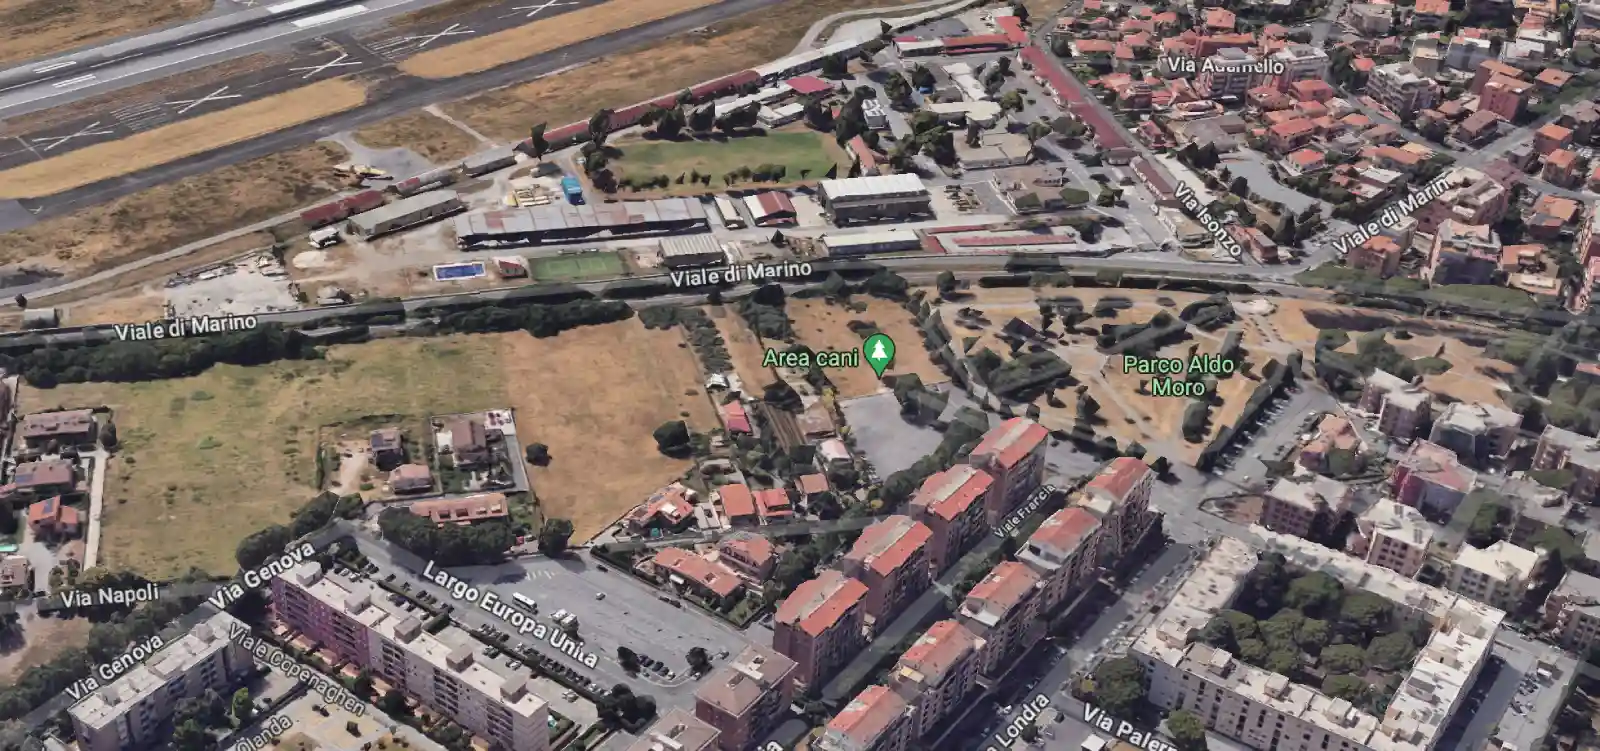 Visuale dall'alto del Parco Aldo Moro di Ciampino con indicata la zona dell'area cani (Google Map con ausilio AI)